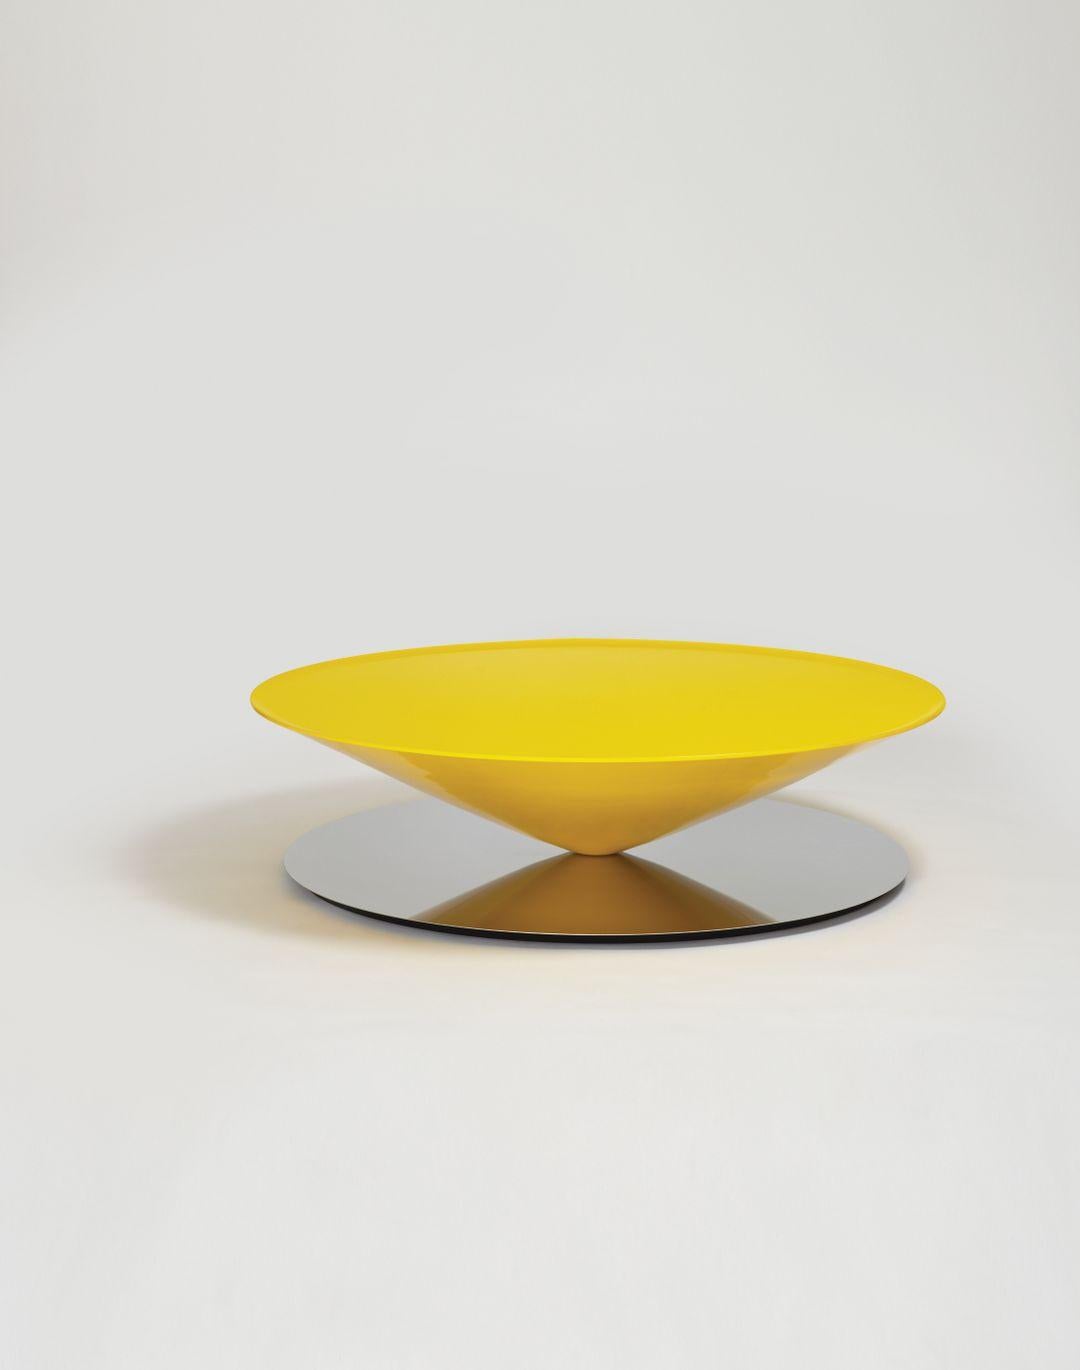 Float est une table basse sculpturale qui défie les sens et la perception. Le design géométrique est adouci par des détails raffinés tels que le rebord biseauté sur les bords du cercle parfait du cône.

La production de Float est un défi technique